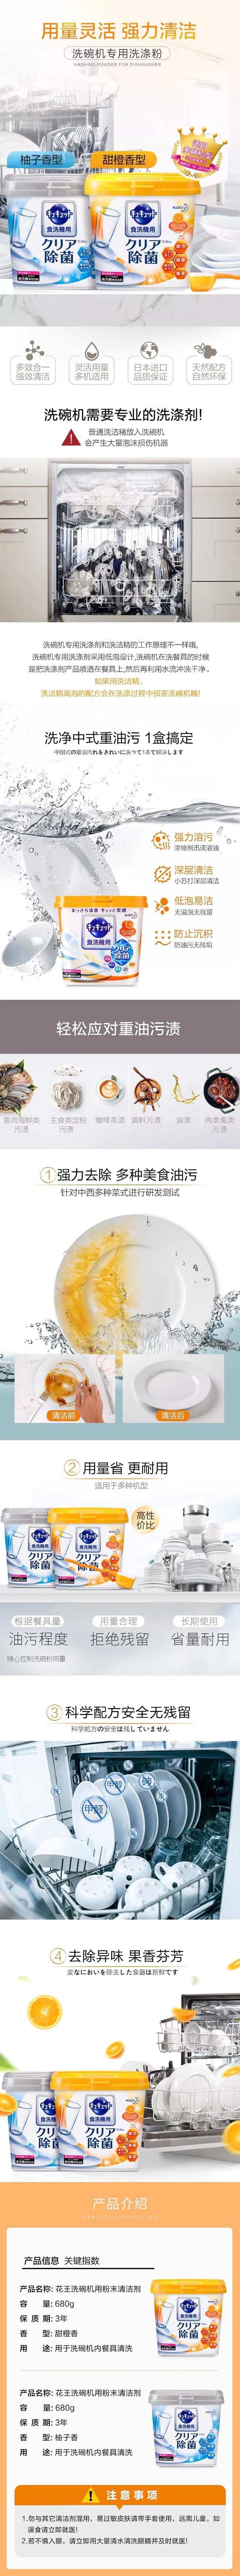 【日本直邮】KAO花王 洗碗机专用洗涤剂 柠檬酸清洁剂粉末盒装 柚子香 680g